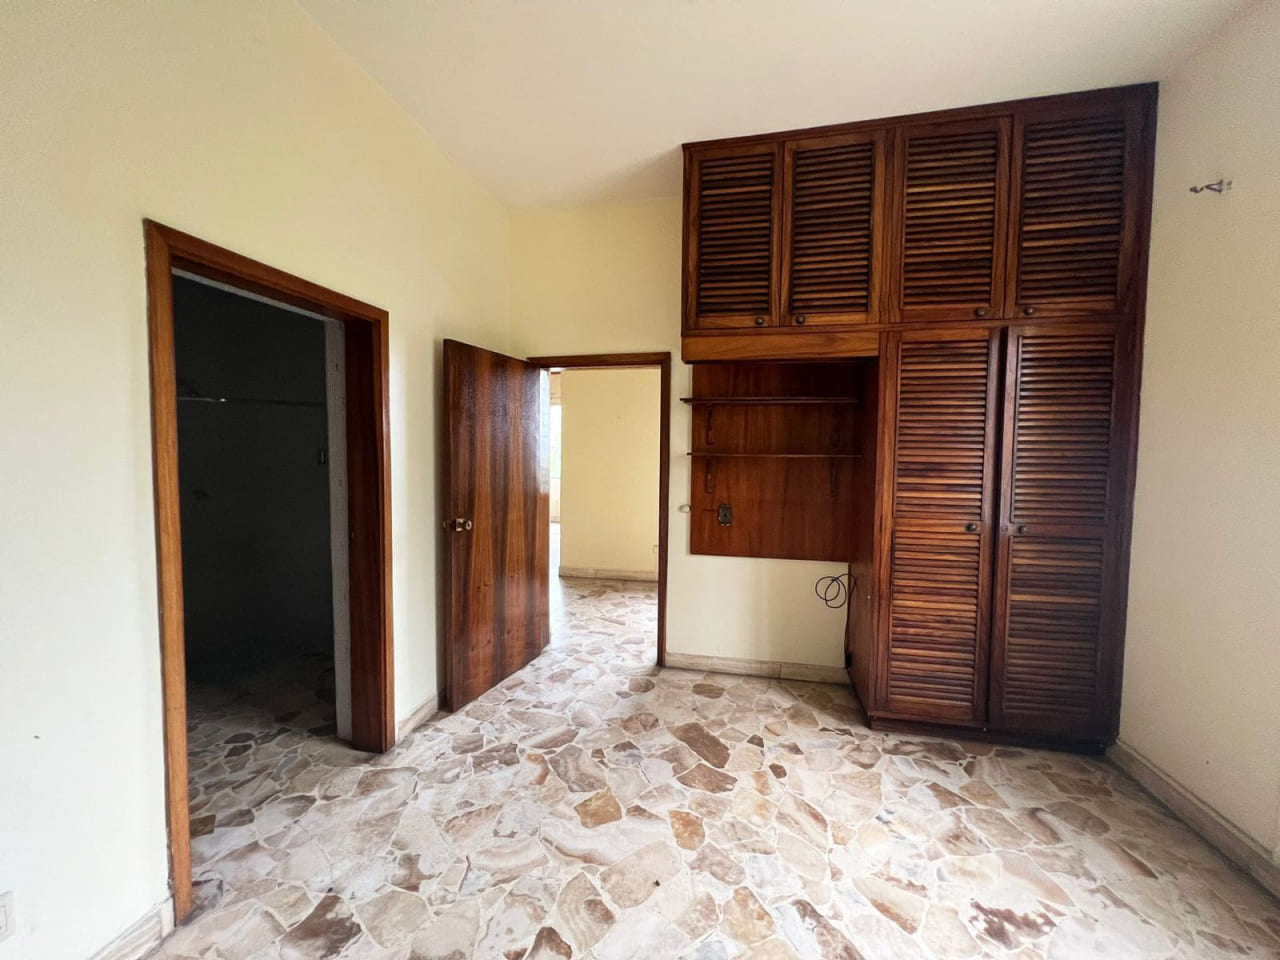 Habitación con closet de madera, pared color amarillo, baño privado con techo de tabla yeso.